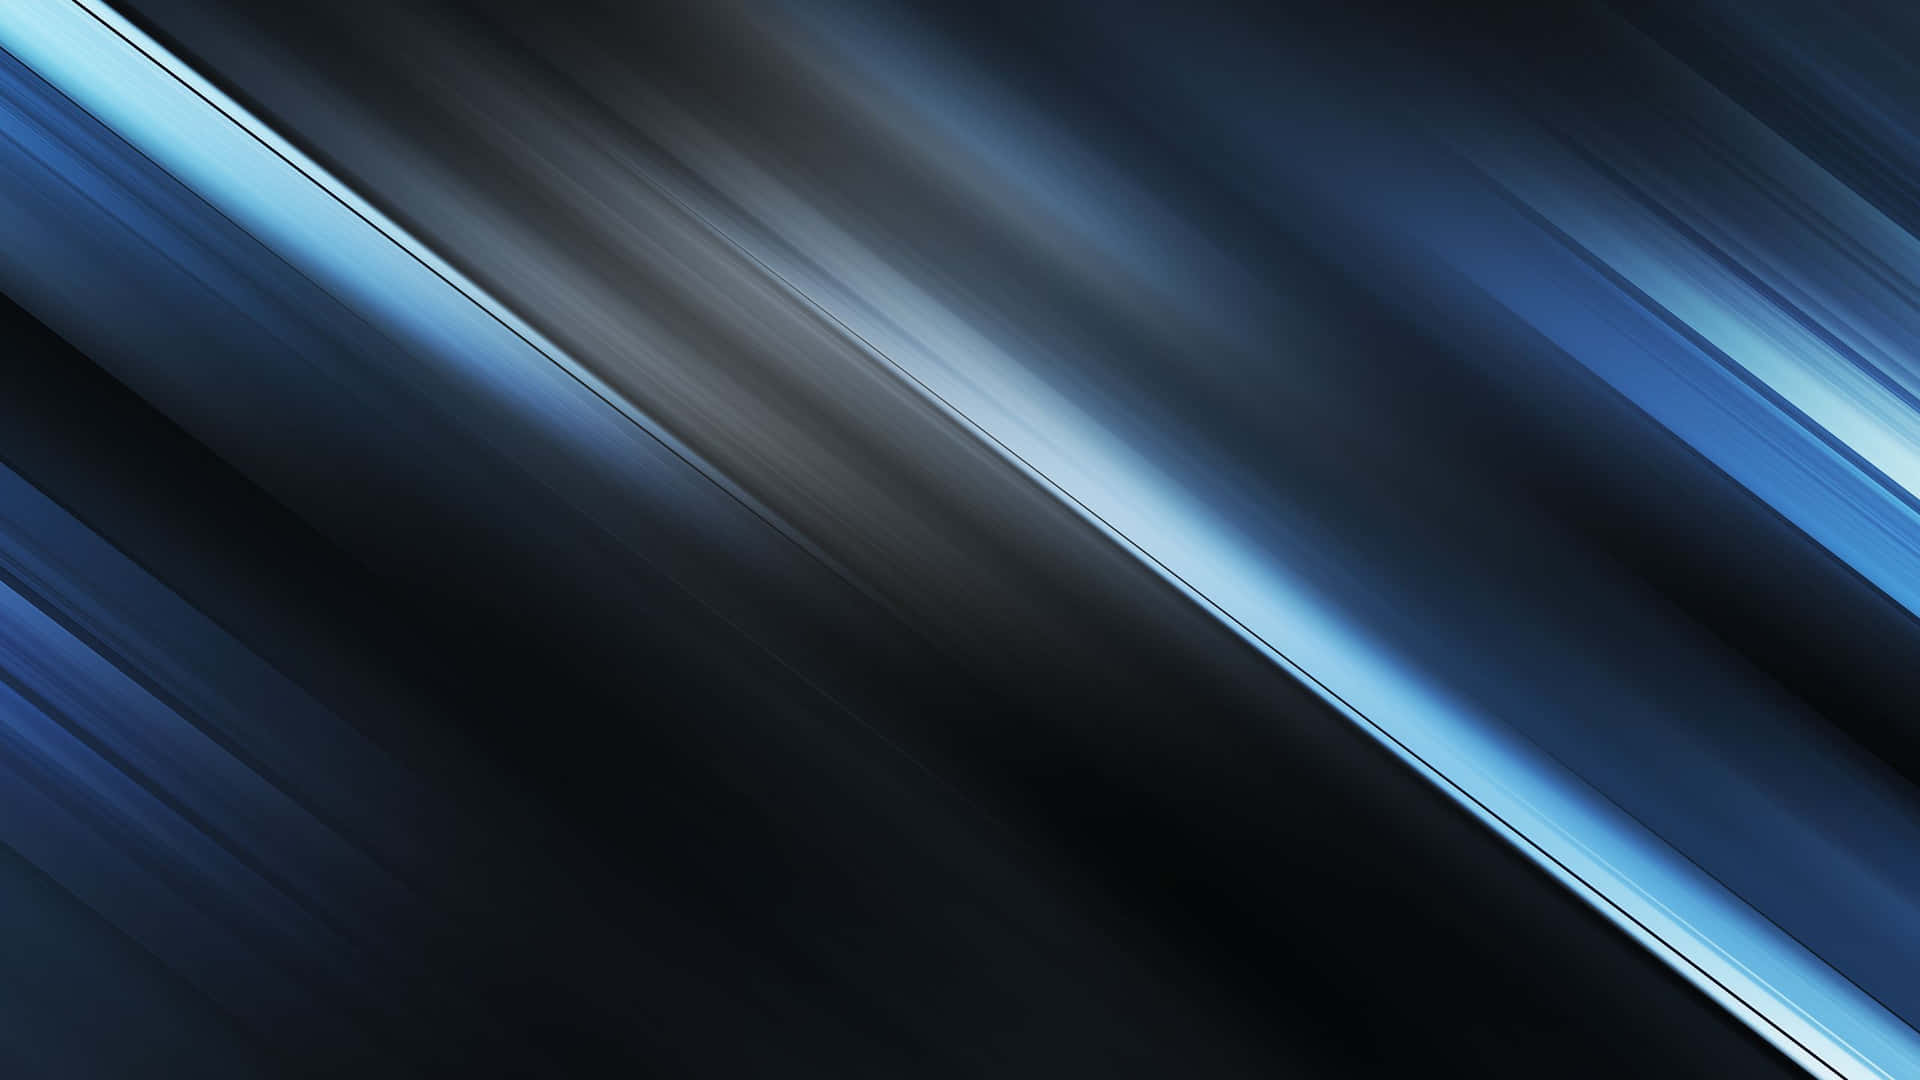 Imagenfondo De Patrón Oscuro Texturizado En Tonos Gris Y Azul.